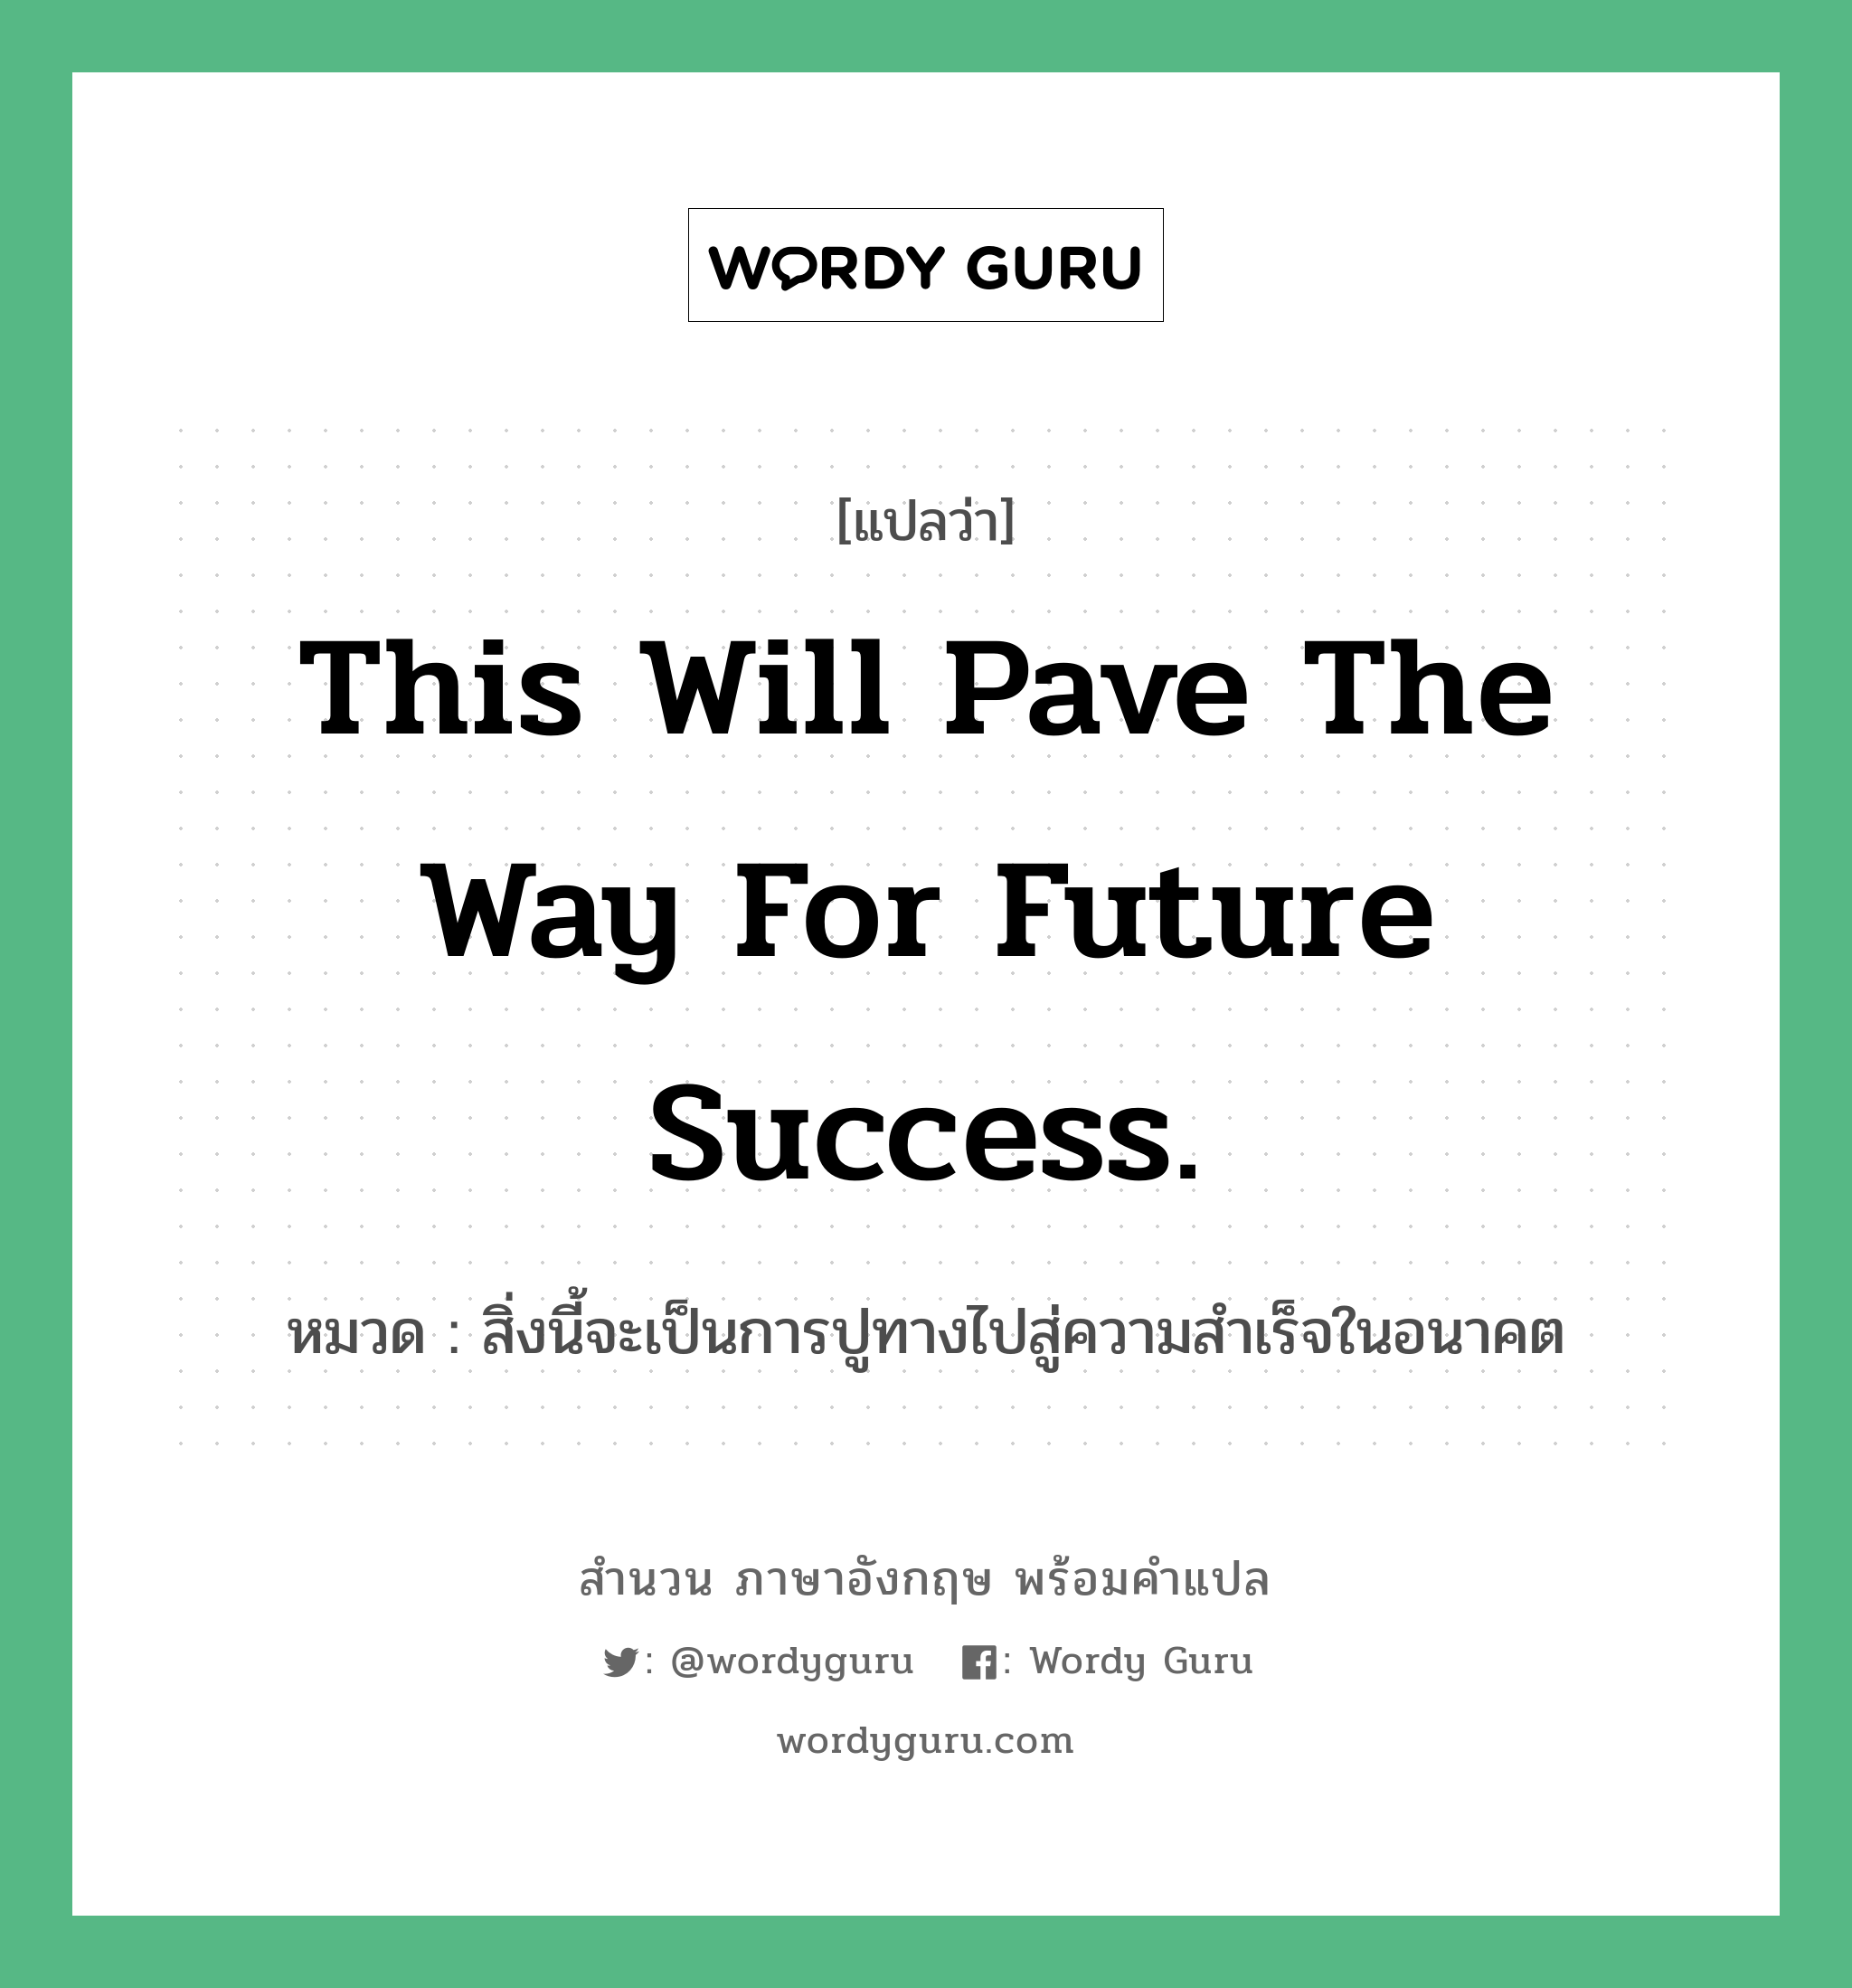 สิ่งนี้จะเป็นการปูทางไปสู่ความสำเร็จในอนาคต ภาษาอังกฤษ?, สำนวนภาษาอังกฤษ สิ่งนี้จะเป็นการปูทางไปสู่ความสำเร็จในอนาคต แปลว่า สิ่งนี้จะเป็นการปูทางไปสู่ความสำเร็จในอนาคต หมวด This will pave the way for future success.